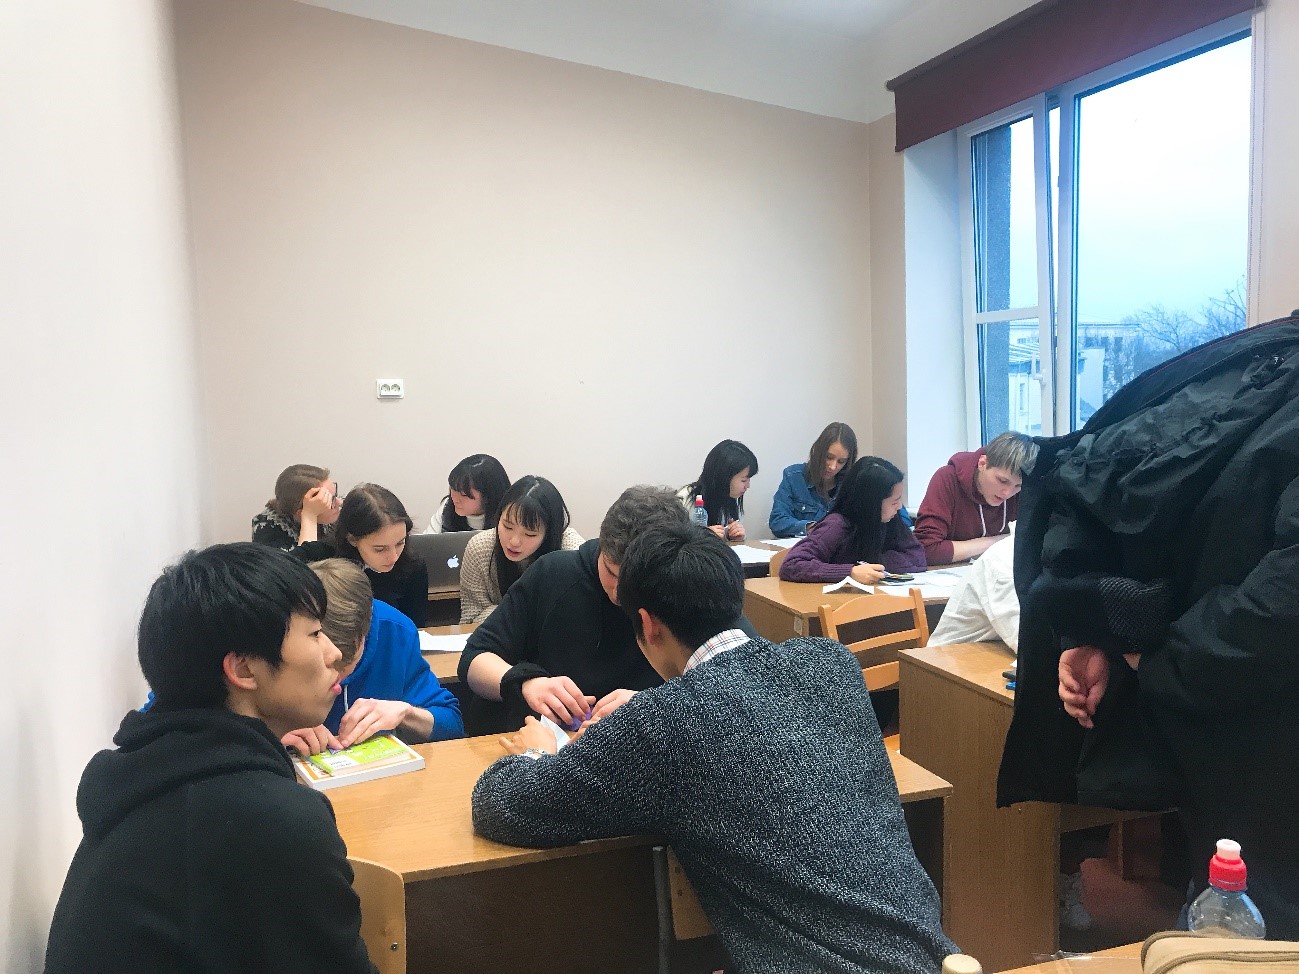 日本語学校の様子
ほぼマンツーマンか日本人のほうが多い程度だった。教室は小さいがちょうどいいくらいのサイズの画像